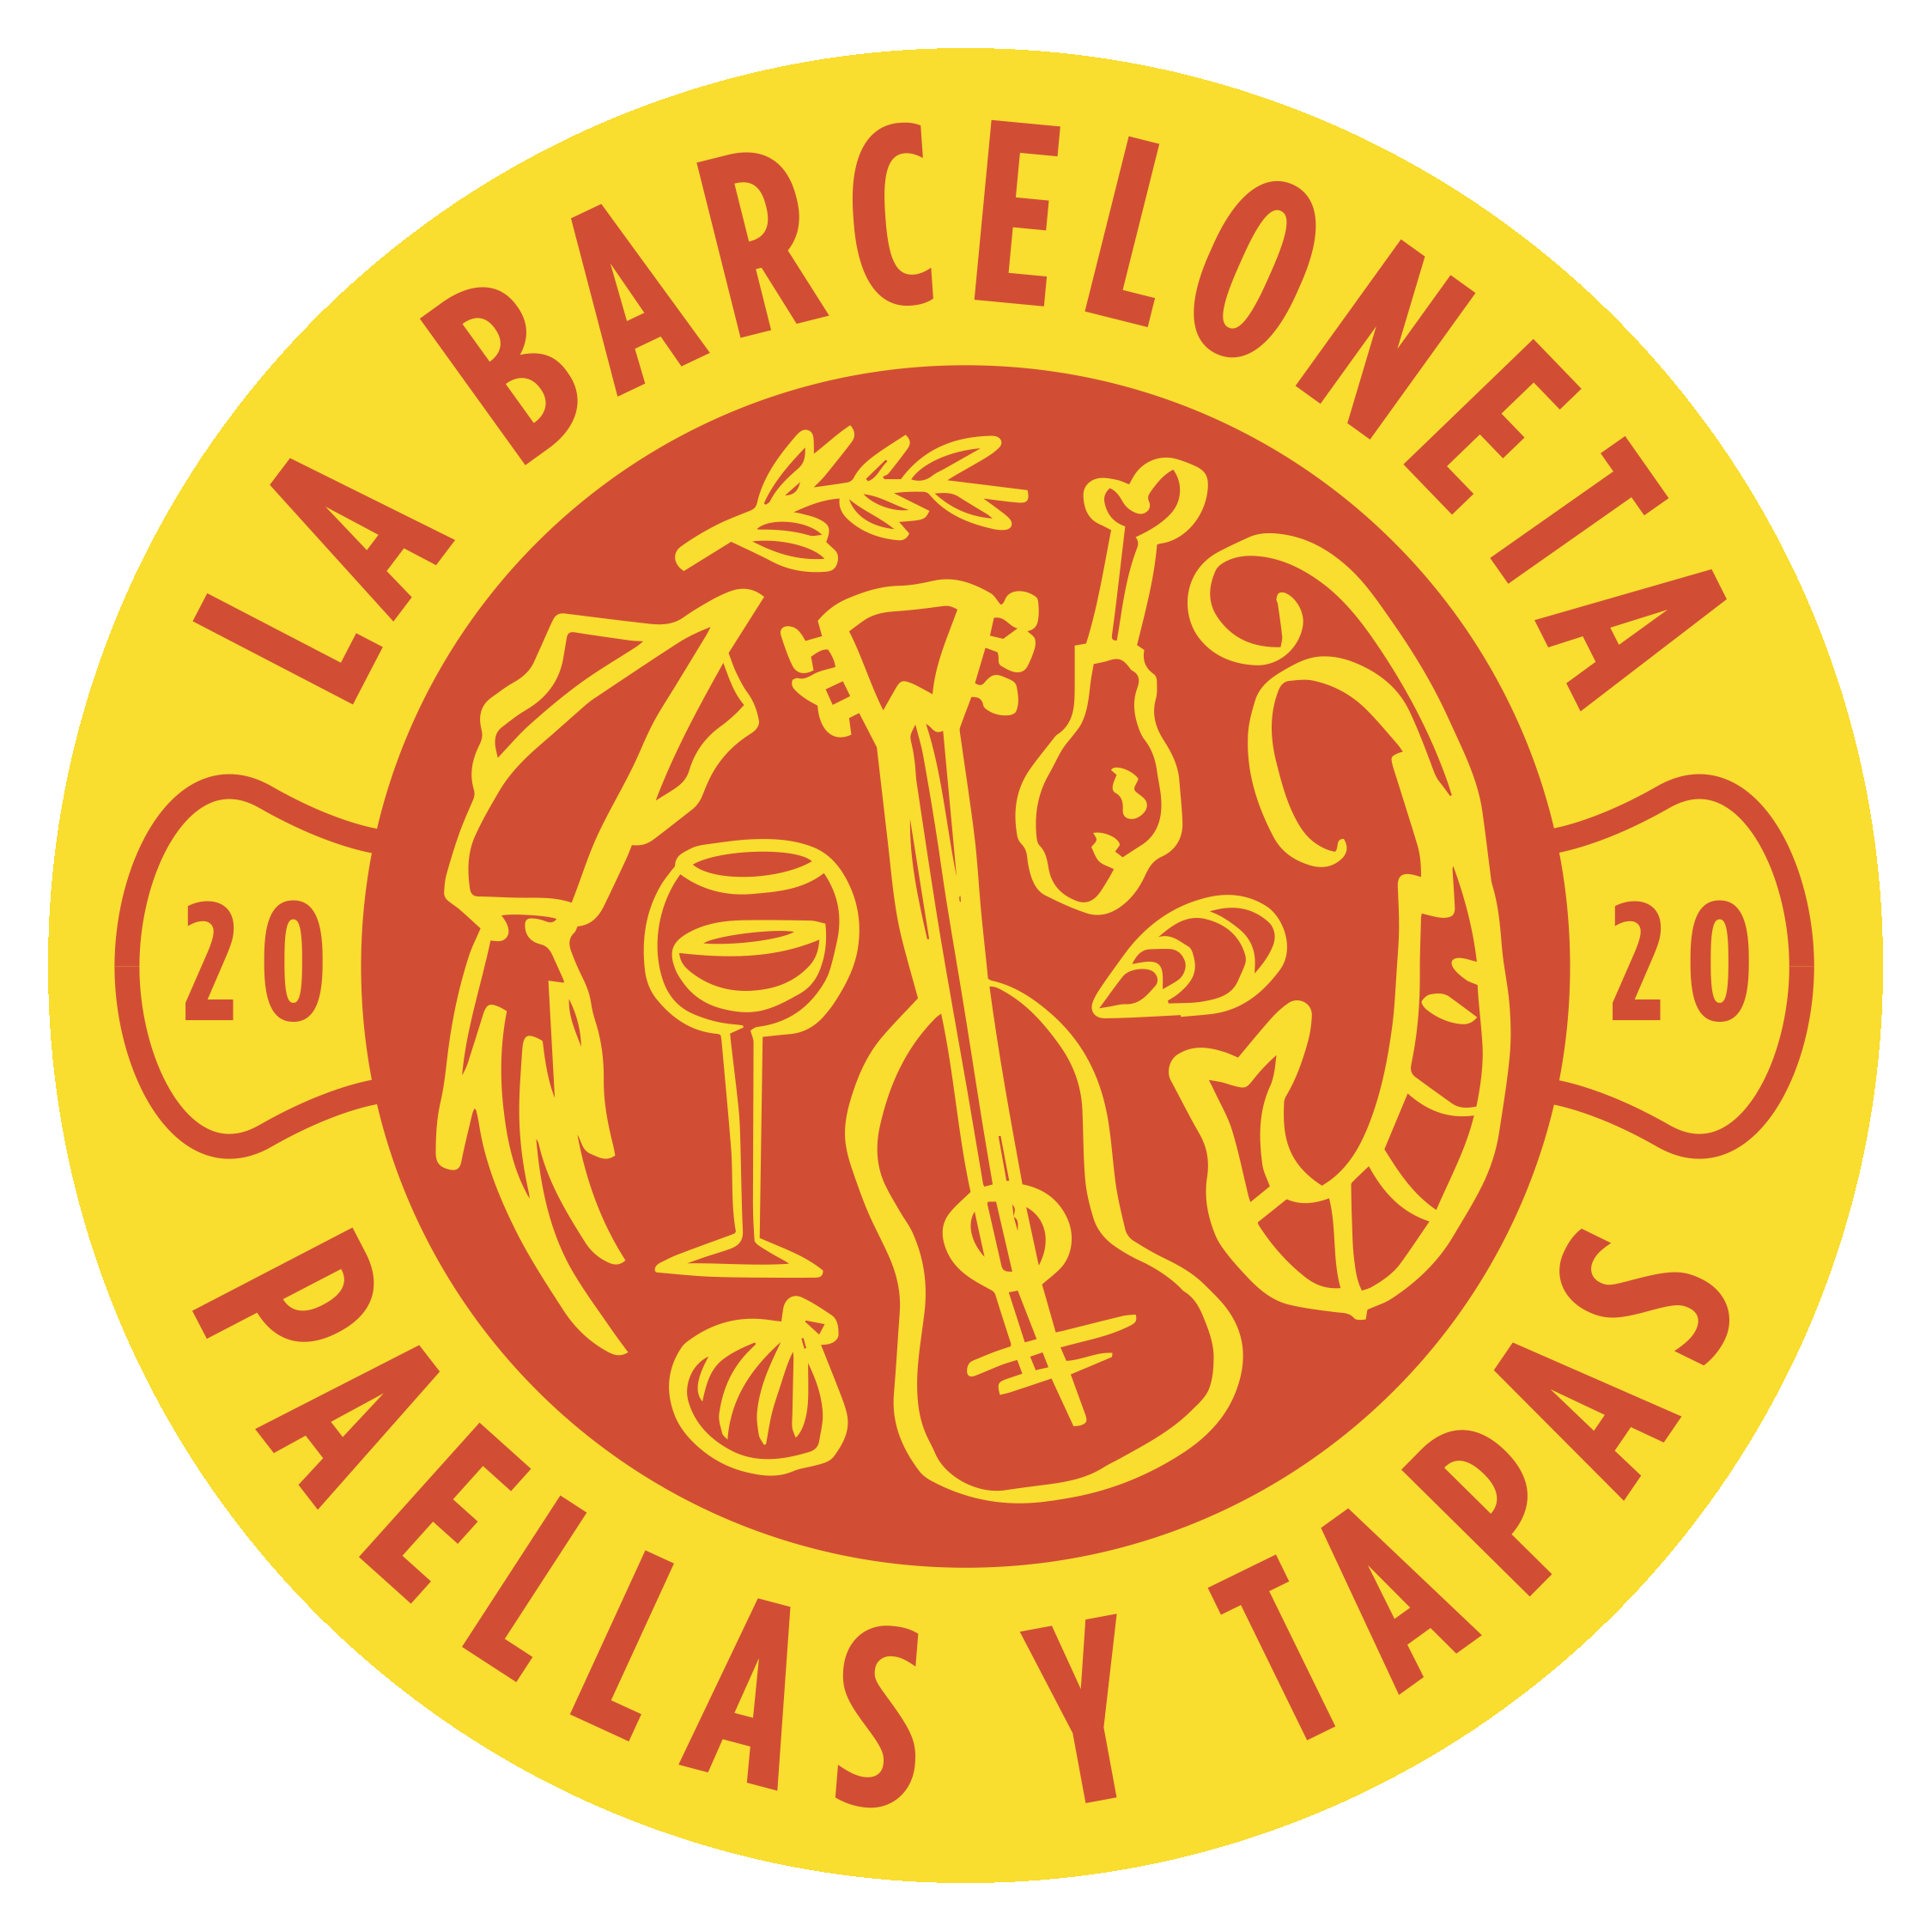 La Barceloneta logo